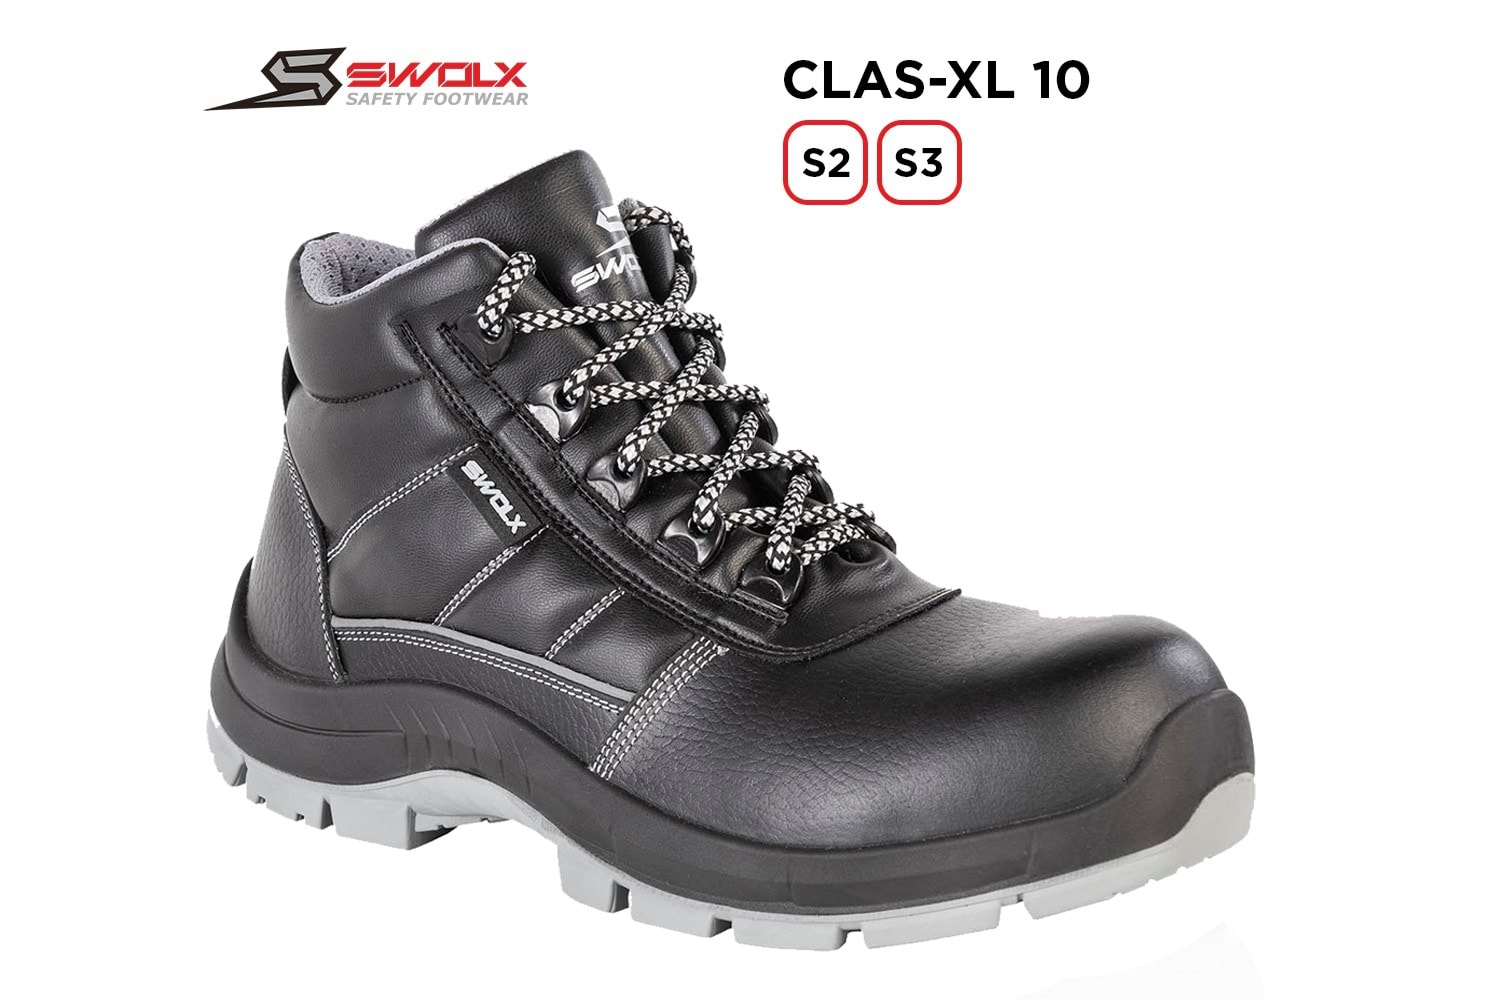 Swolx İş Ayakkabısı - Clas-Xl 10 S2 - 41